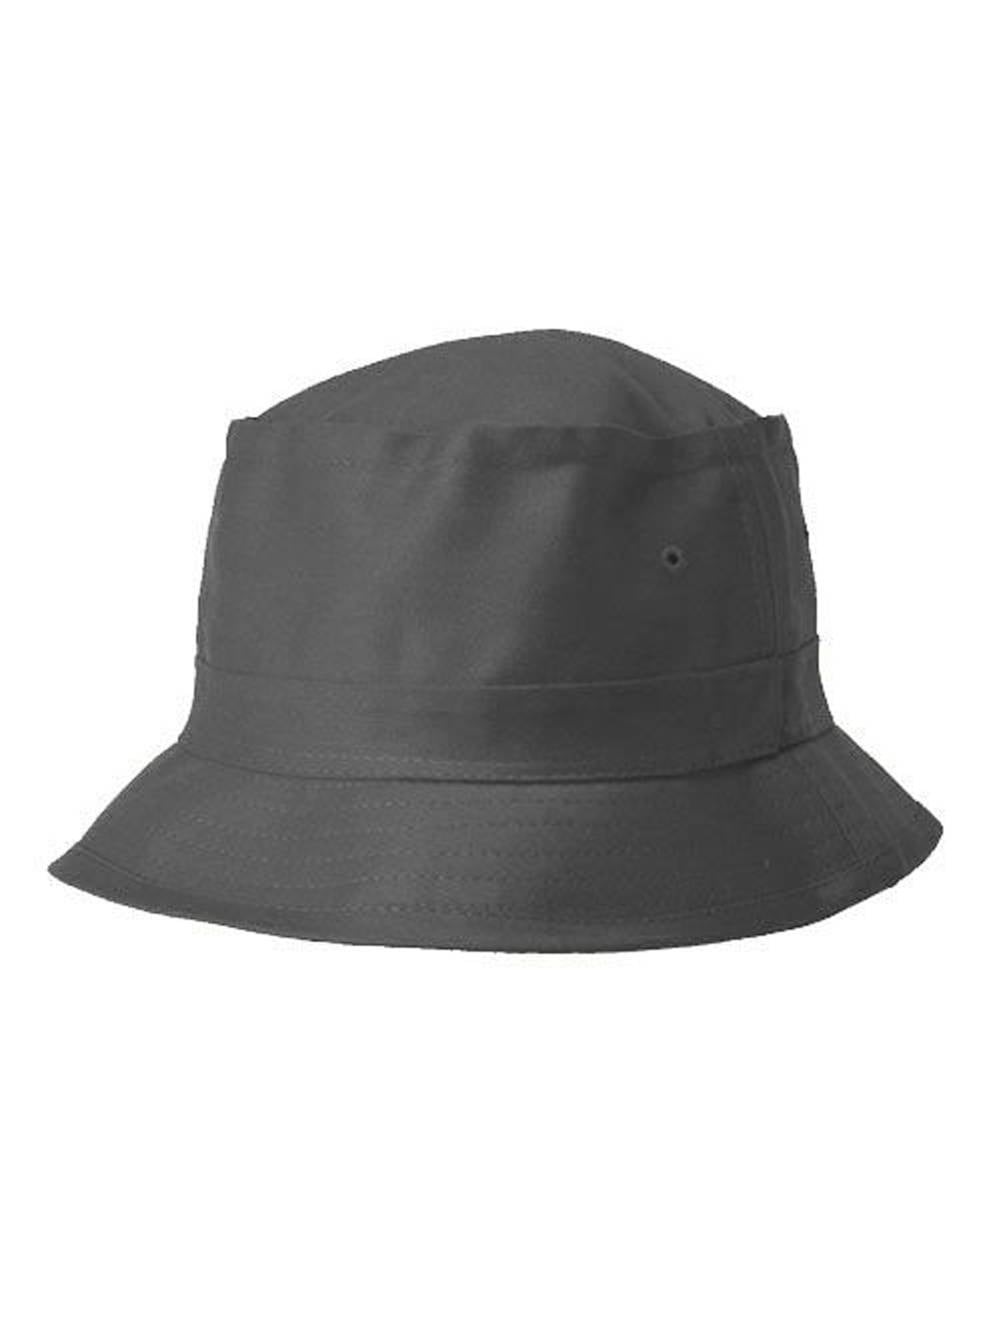 TOP HEADWEAR TopHeadwear Blank Outdoor Bucket Hat